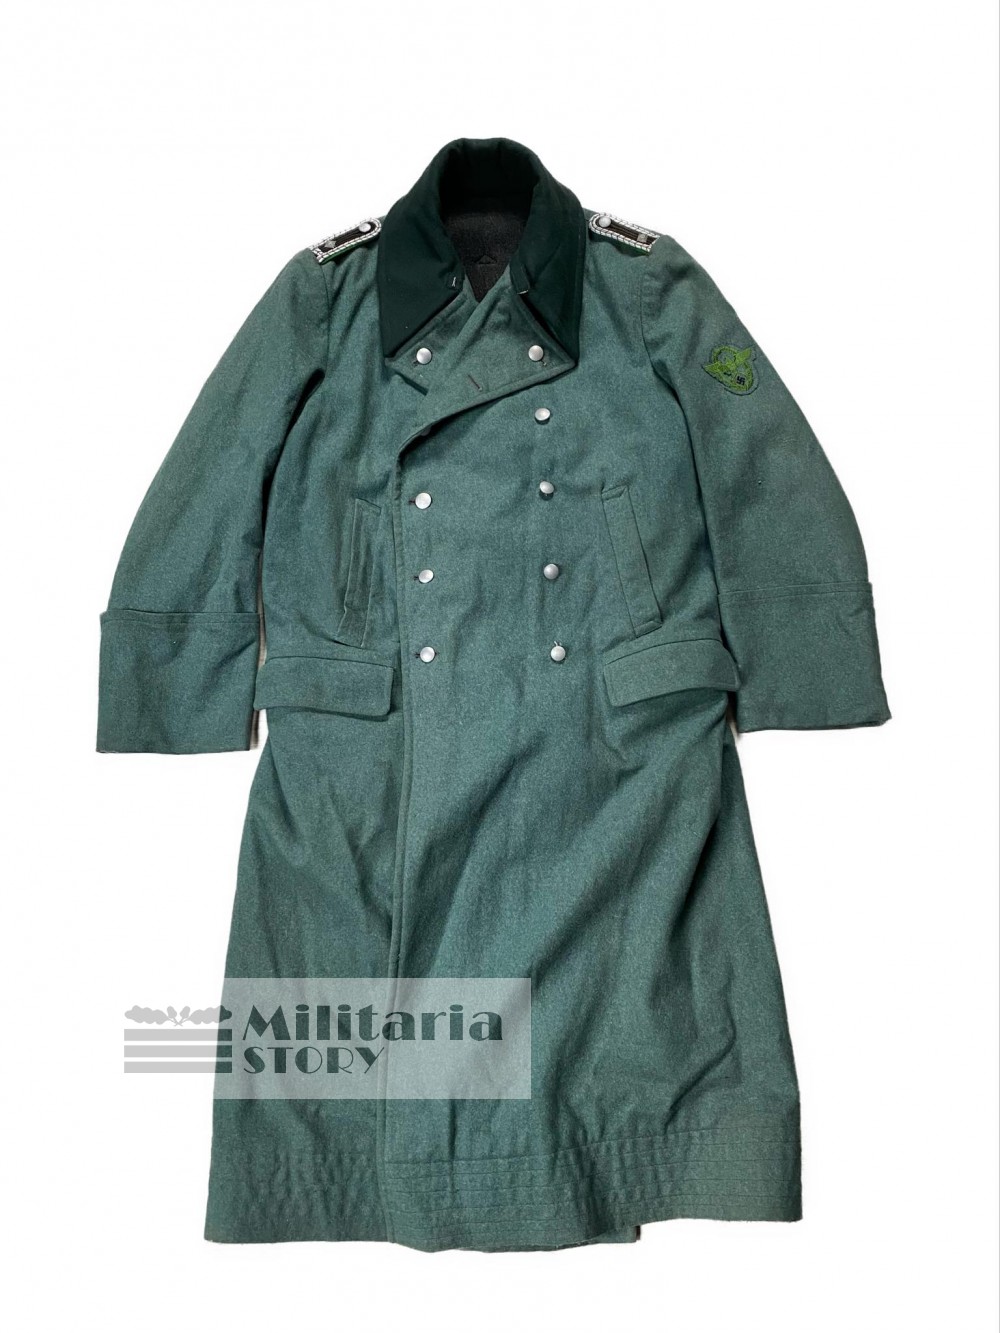 Polizei overcoat - Polizei overcoat: Vintage German Uniforms